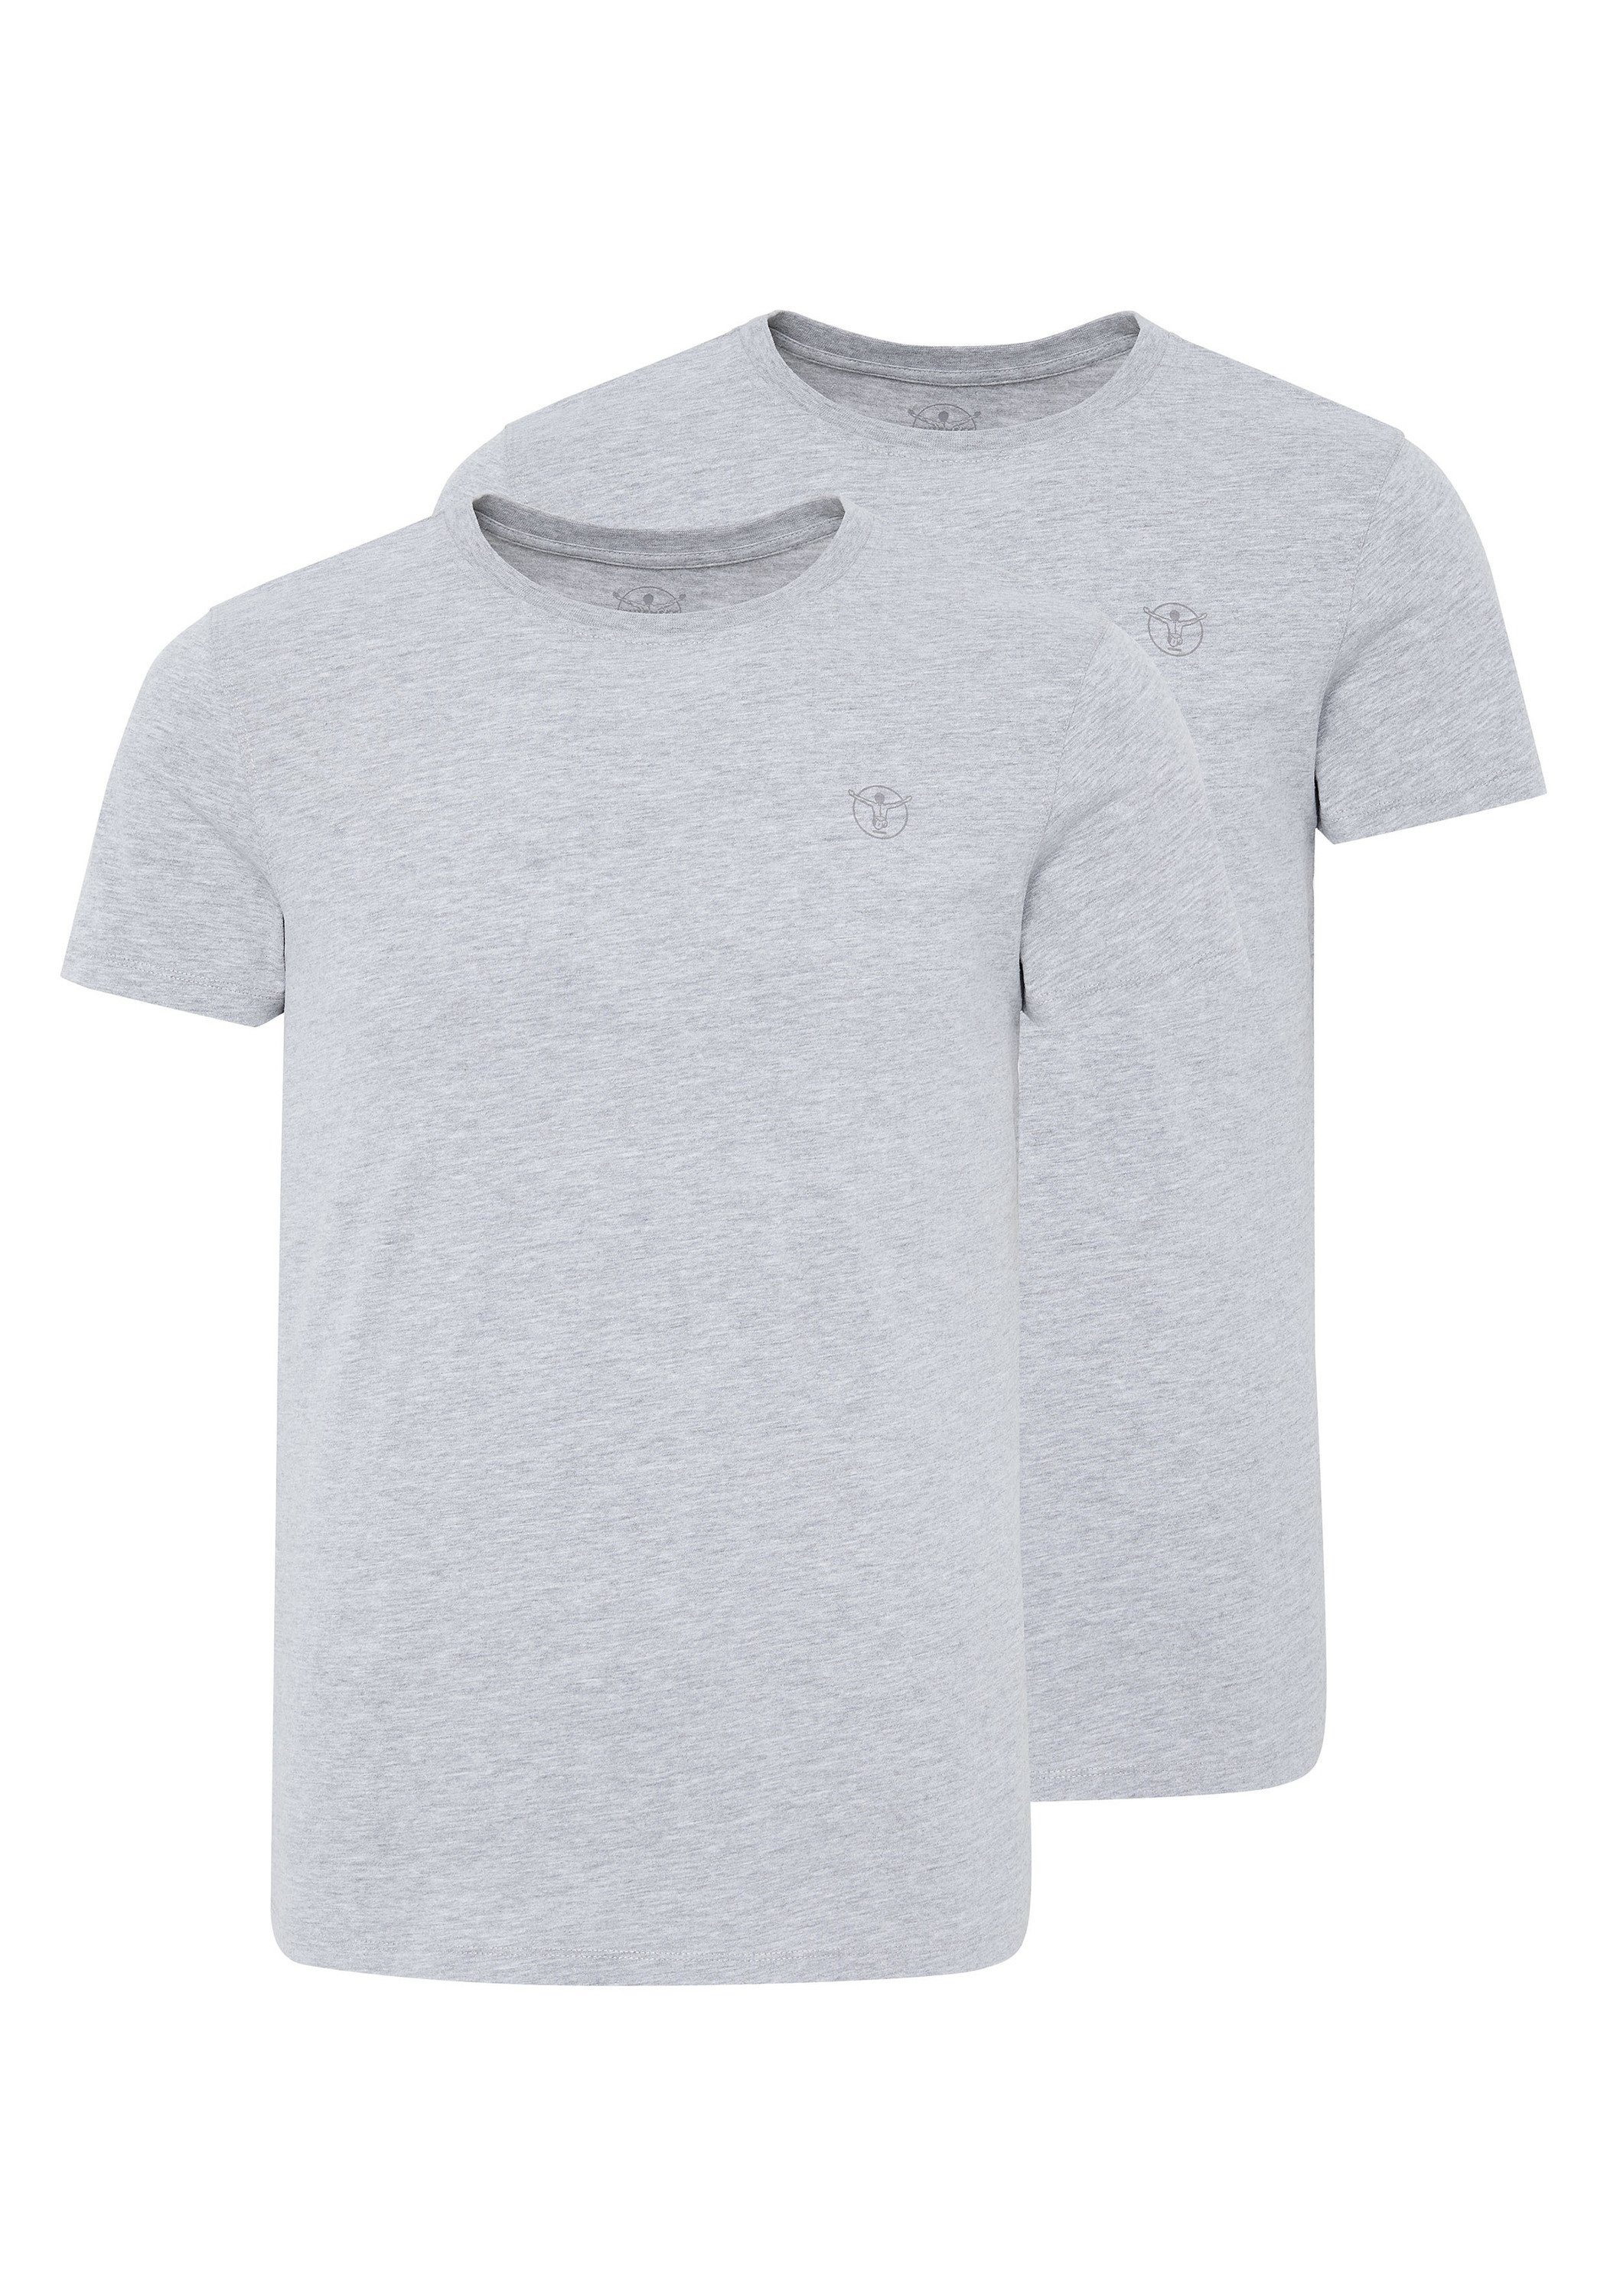 Mel, im Grey T-Shirts mit Neutr, 2 Basic-Stil Logo Print-Shirt Chiemsee